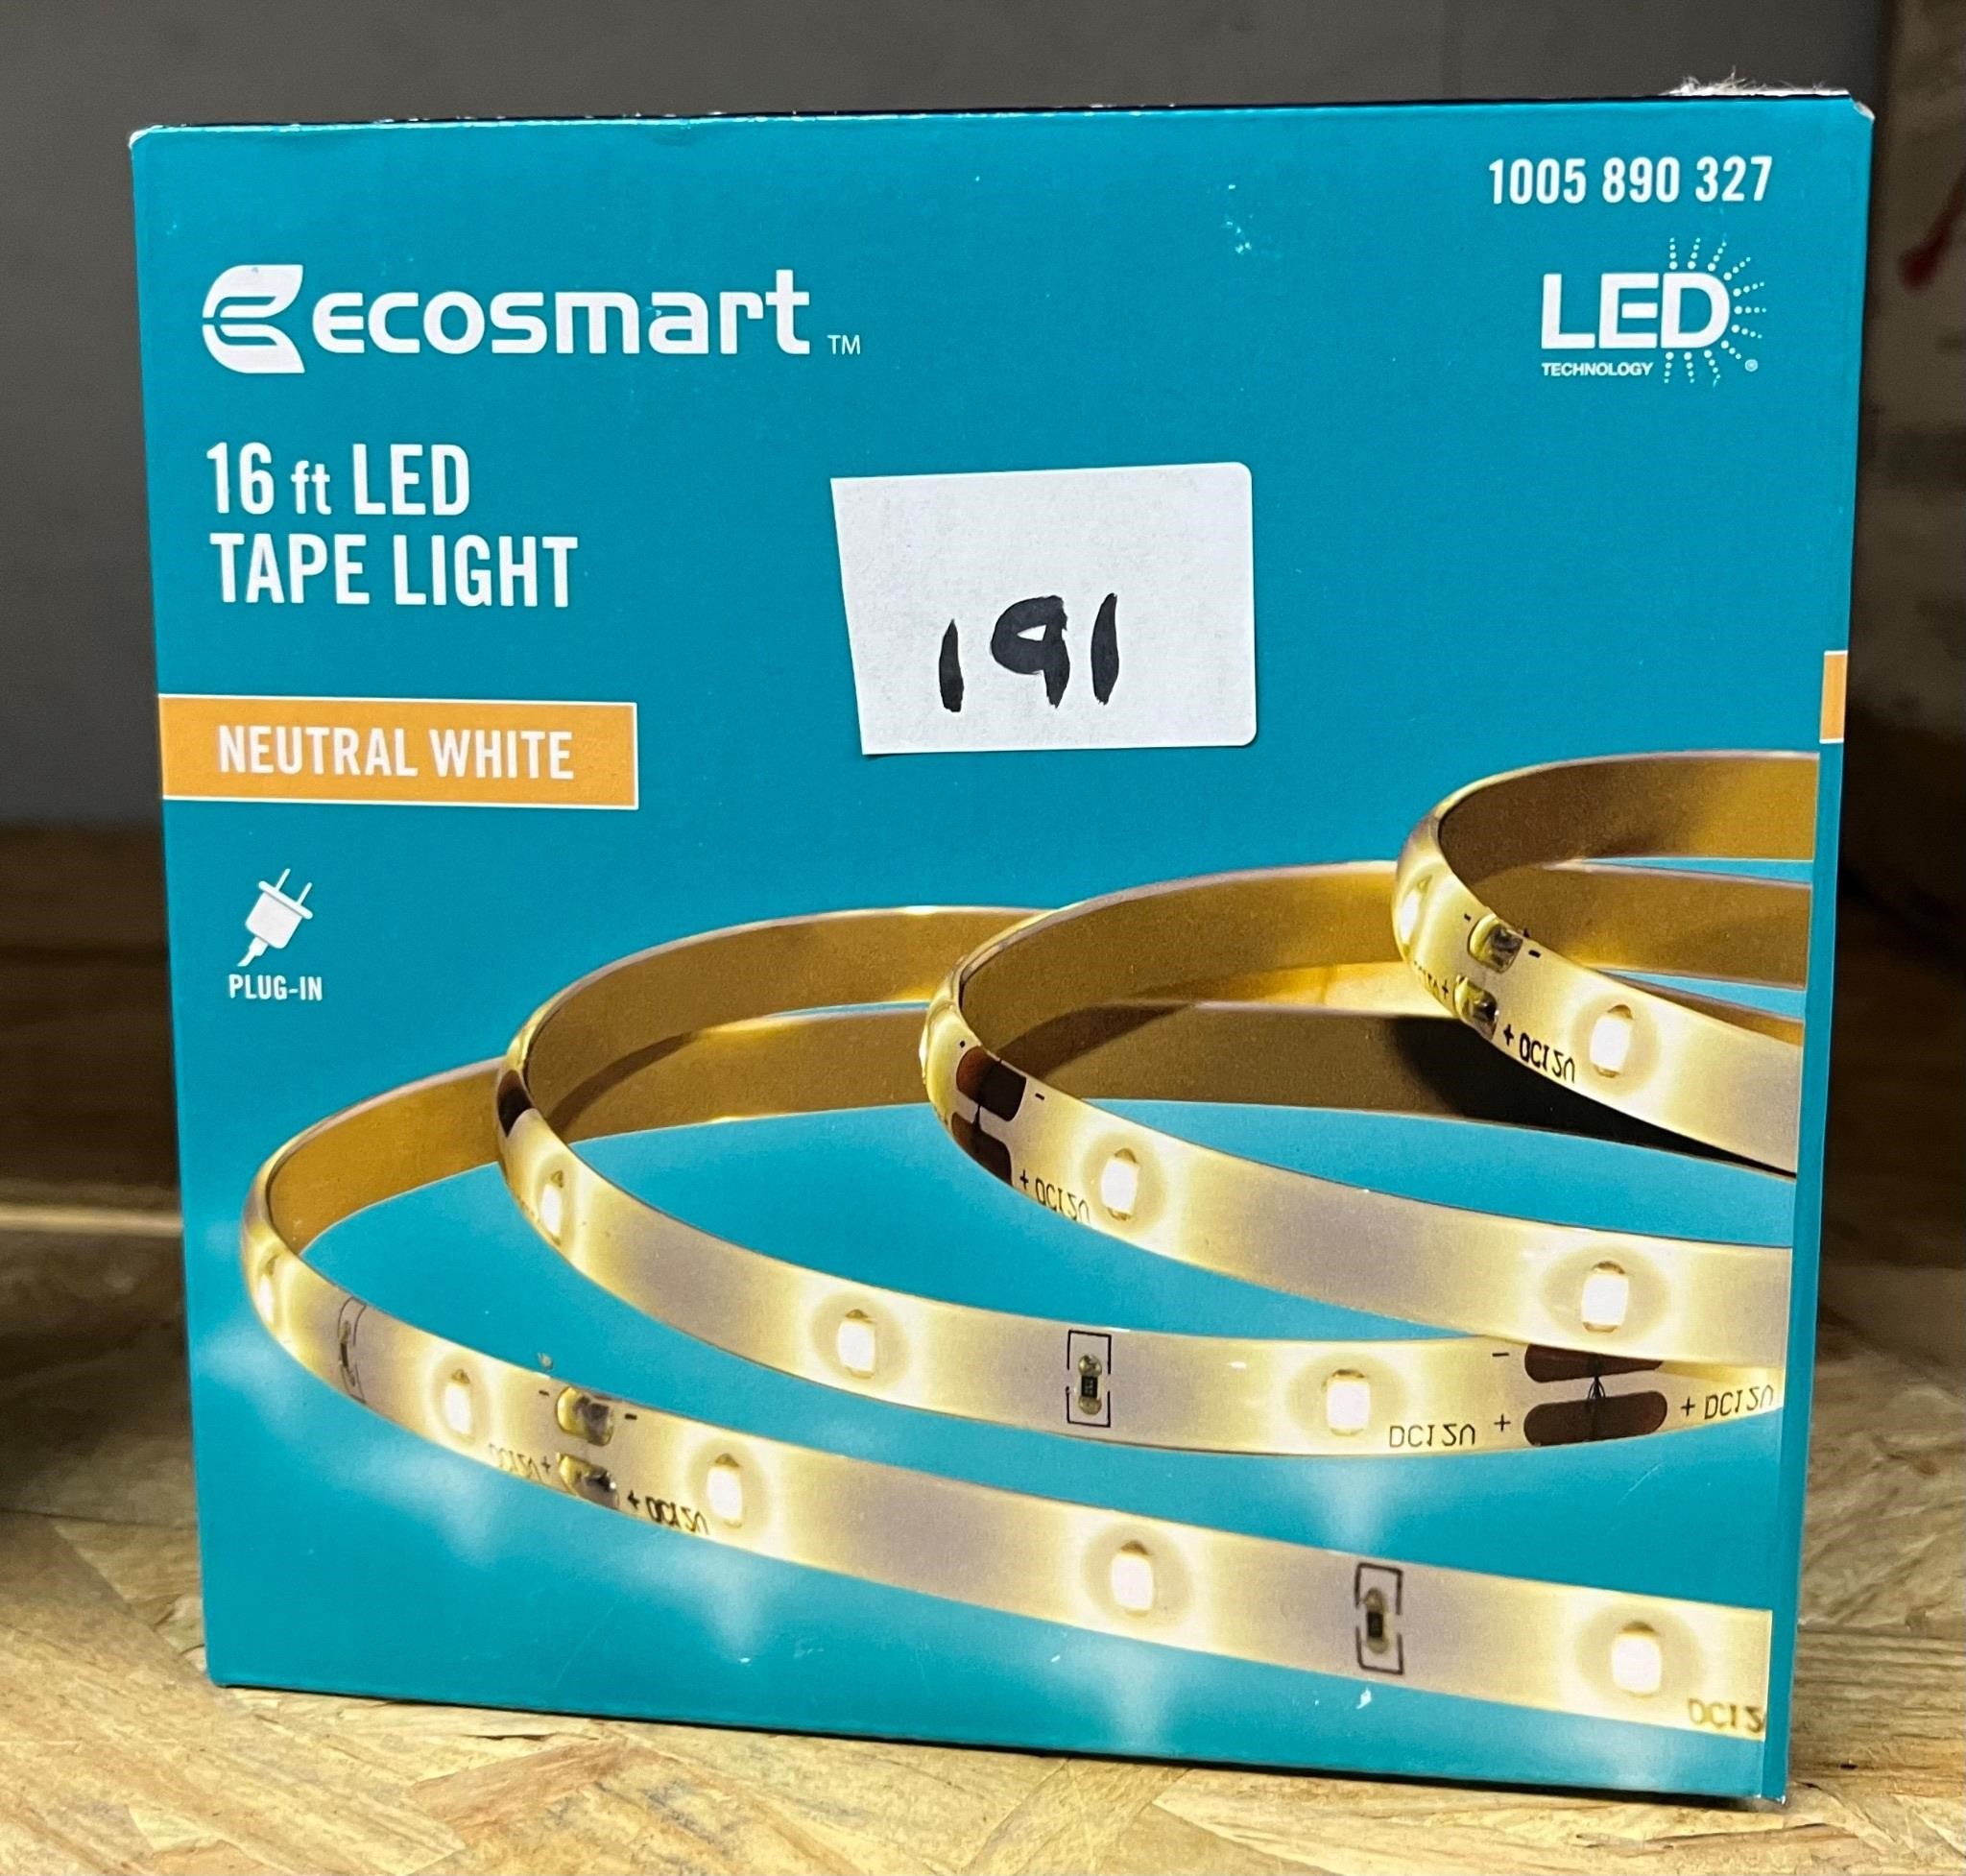 Ecosmart 16ft LED Tape Light